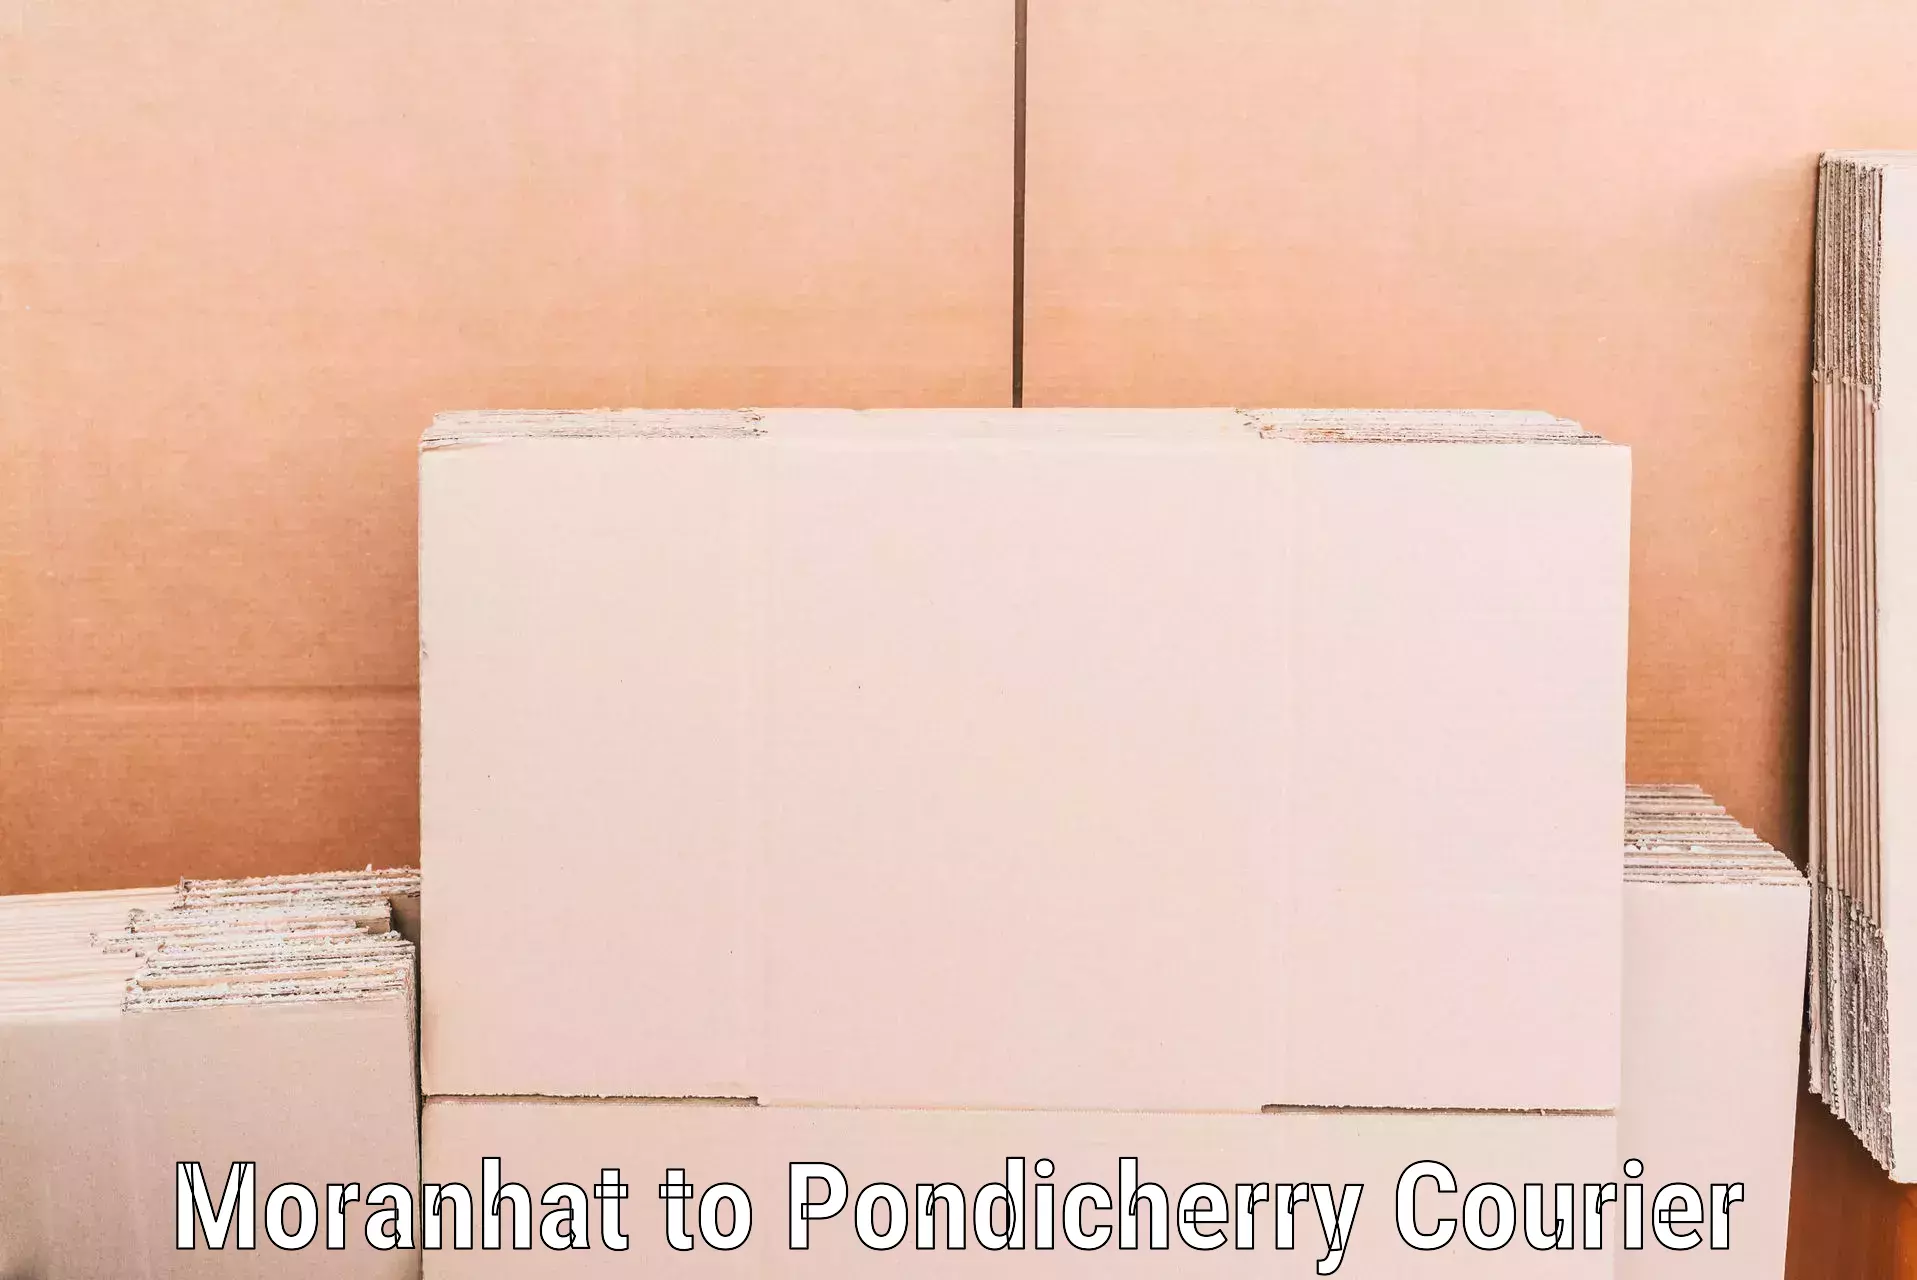 Home goods moving company Moranhat to Pondicherry